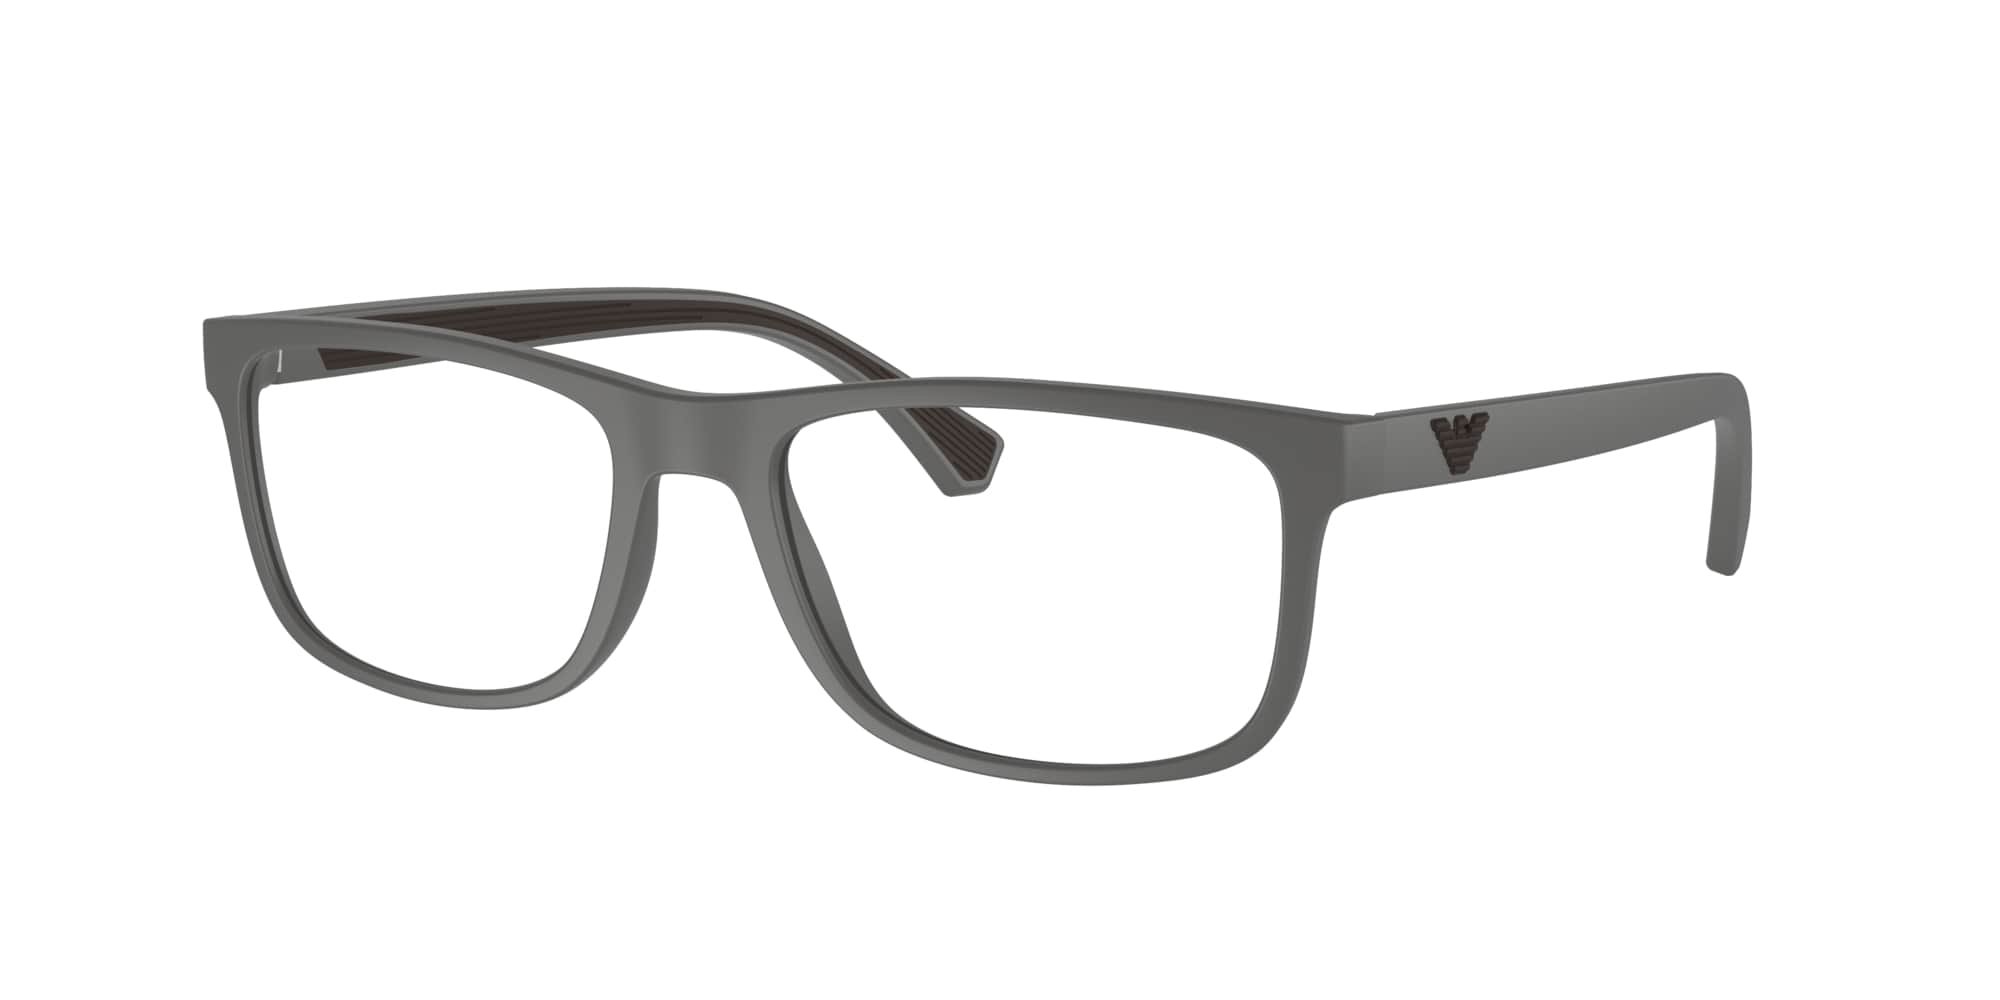 Das Bild zeigt die Korrektionsbrille EA3147 5126 von der Marke Emporio Armani in Grau.